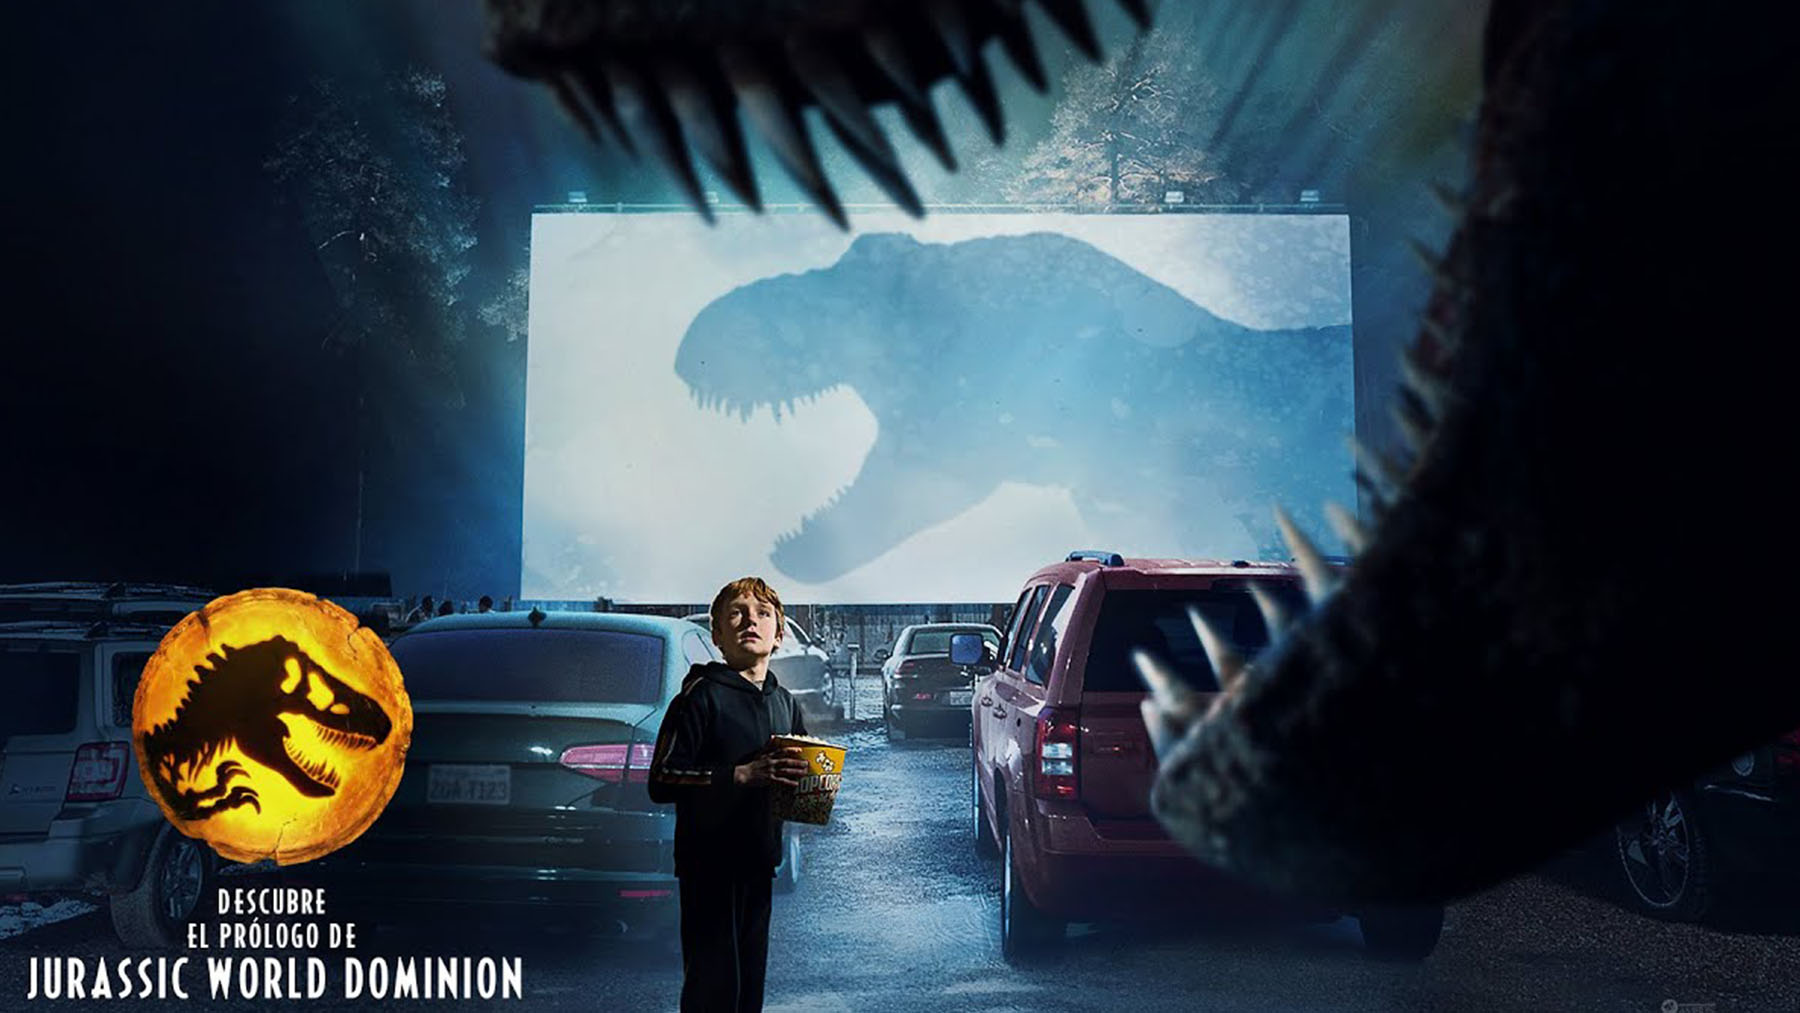 El prólogo de ‘Jurassic World: Dominion’ ya está disponible: Los dinosaurios vuelven a dominar el mundo 65 millones de años después